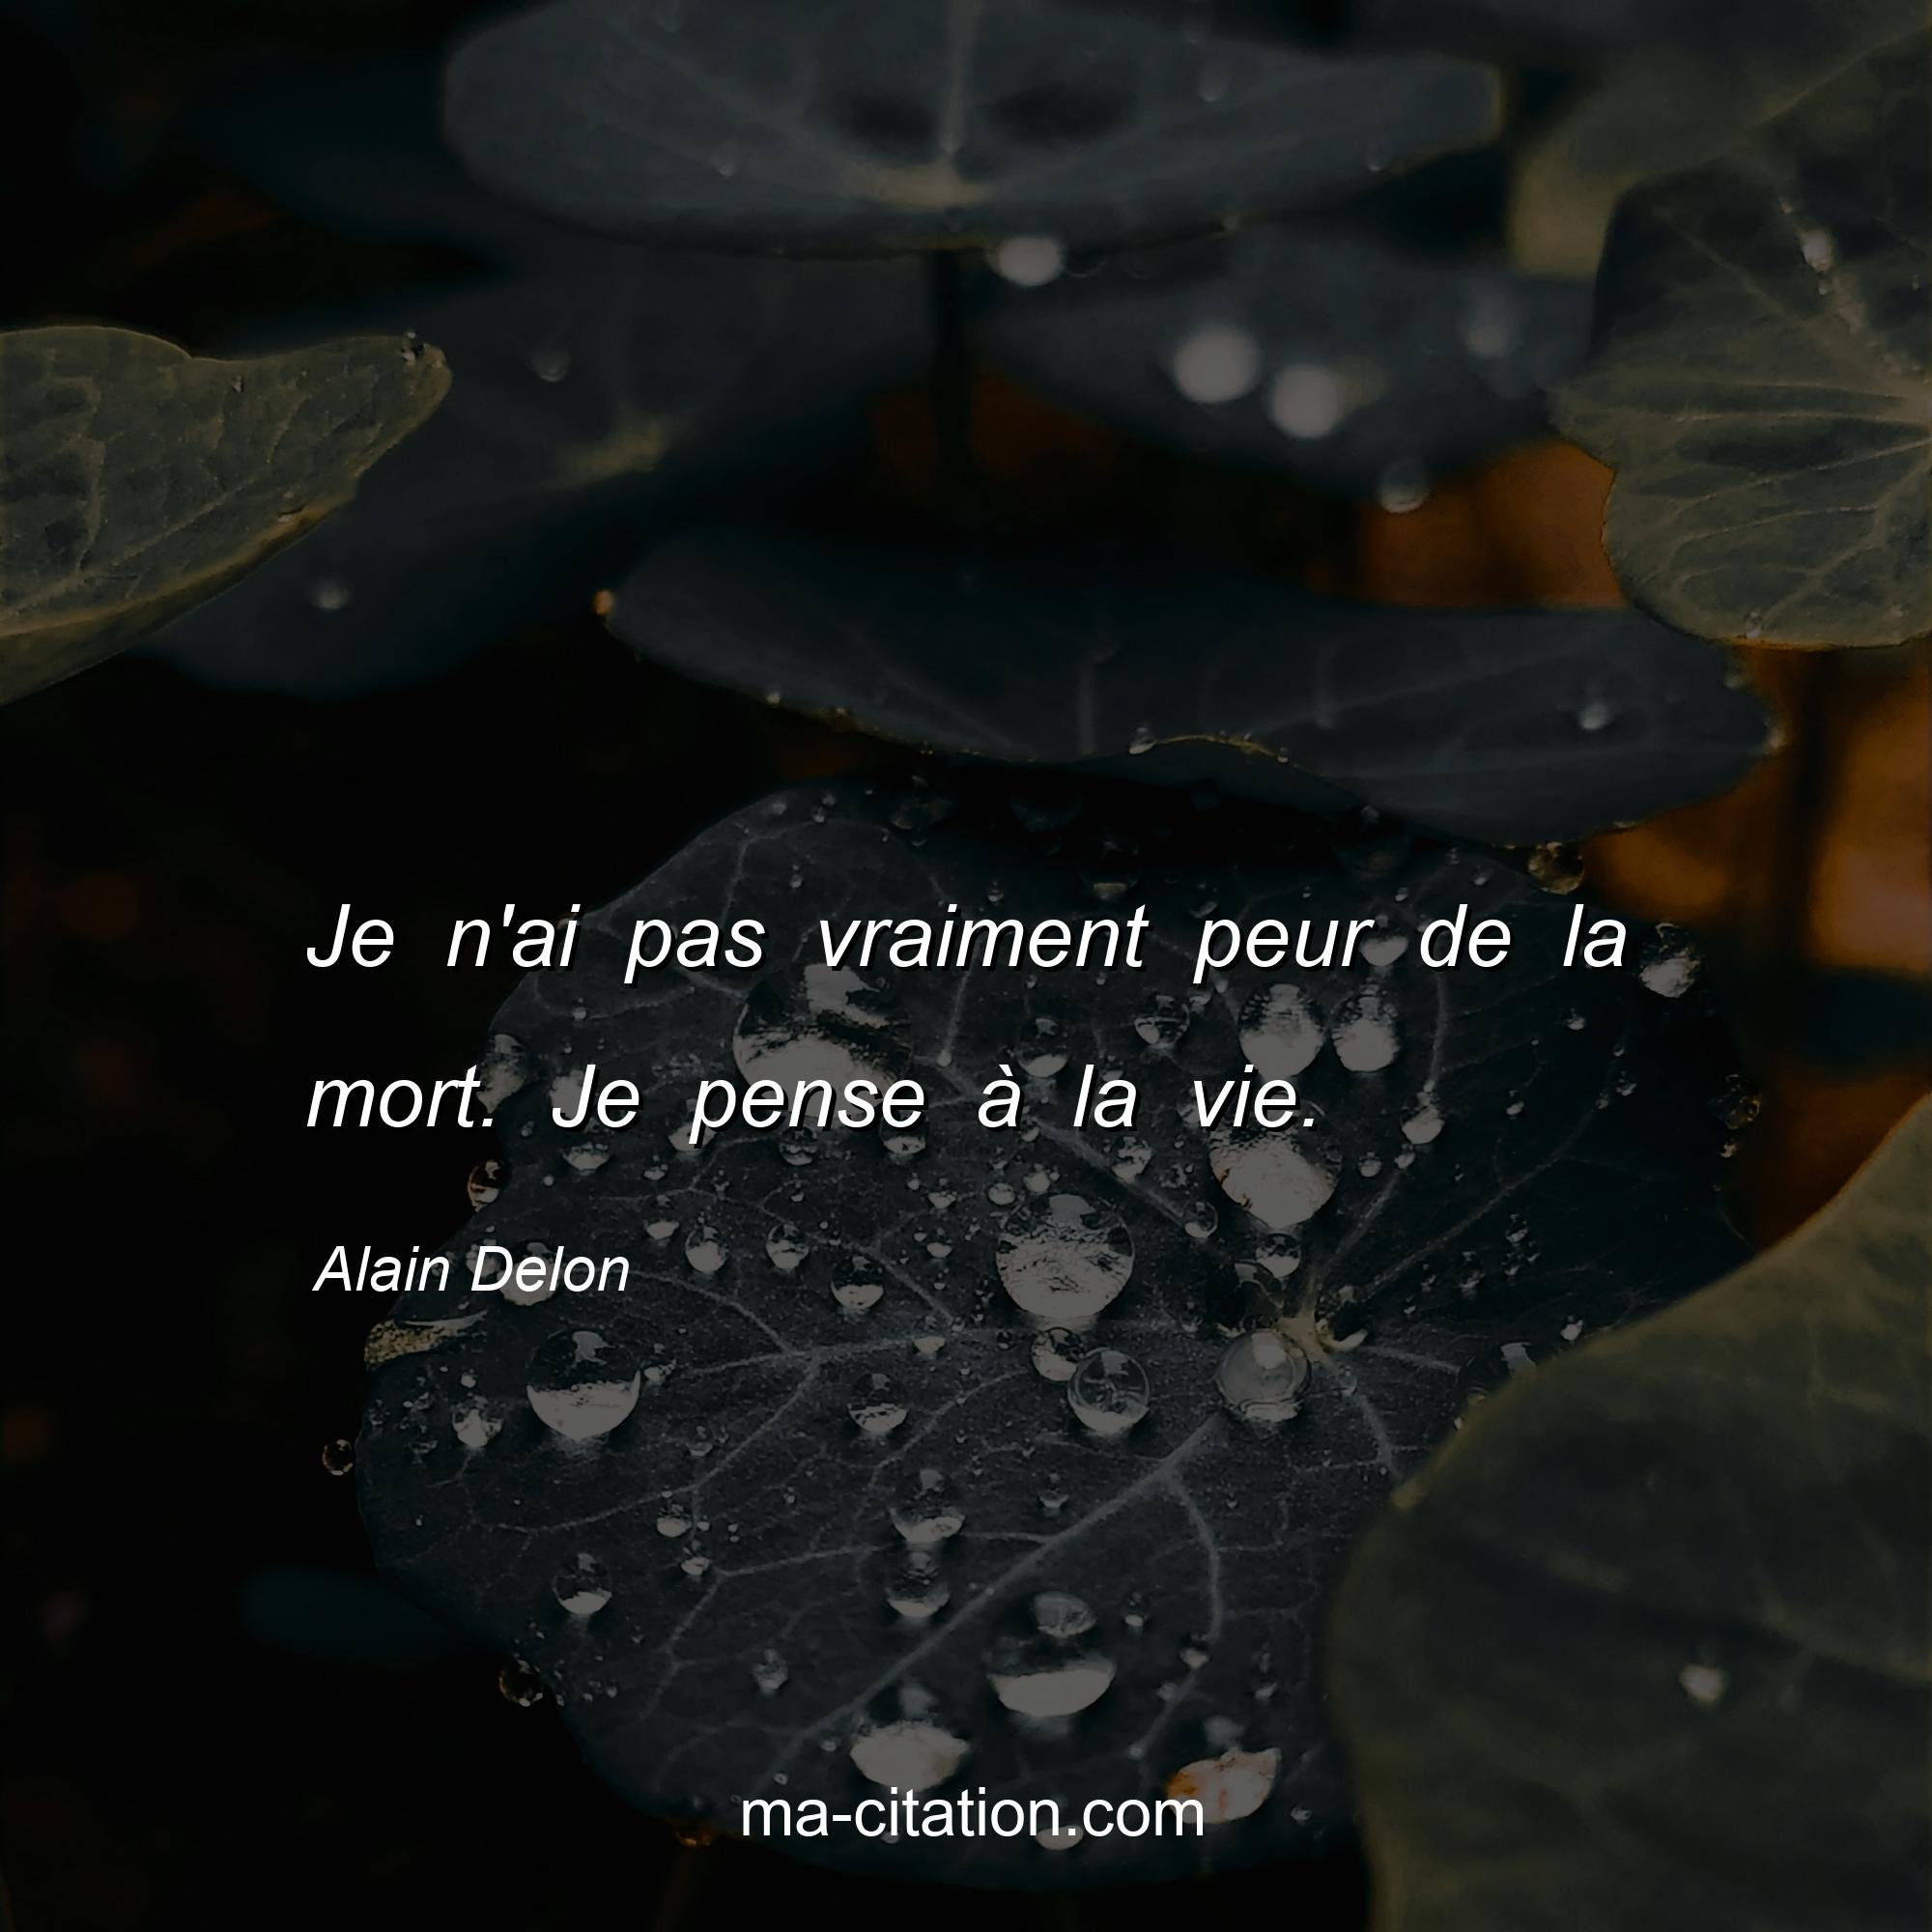 Alain Delon : Je n'ai pas vraiment peur de la mort. Je pense à la vie.